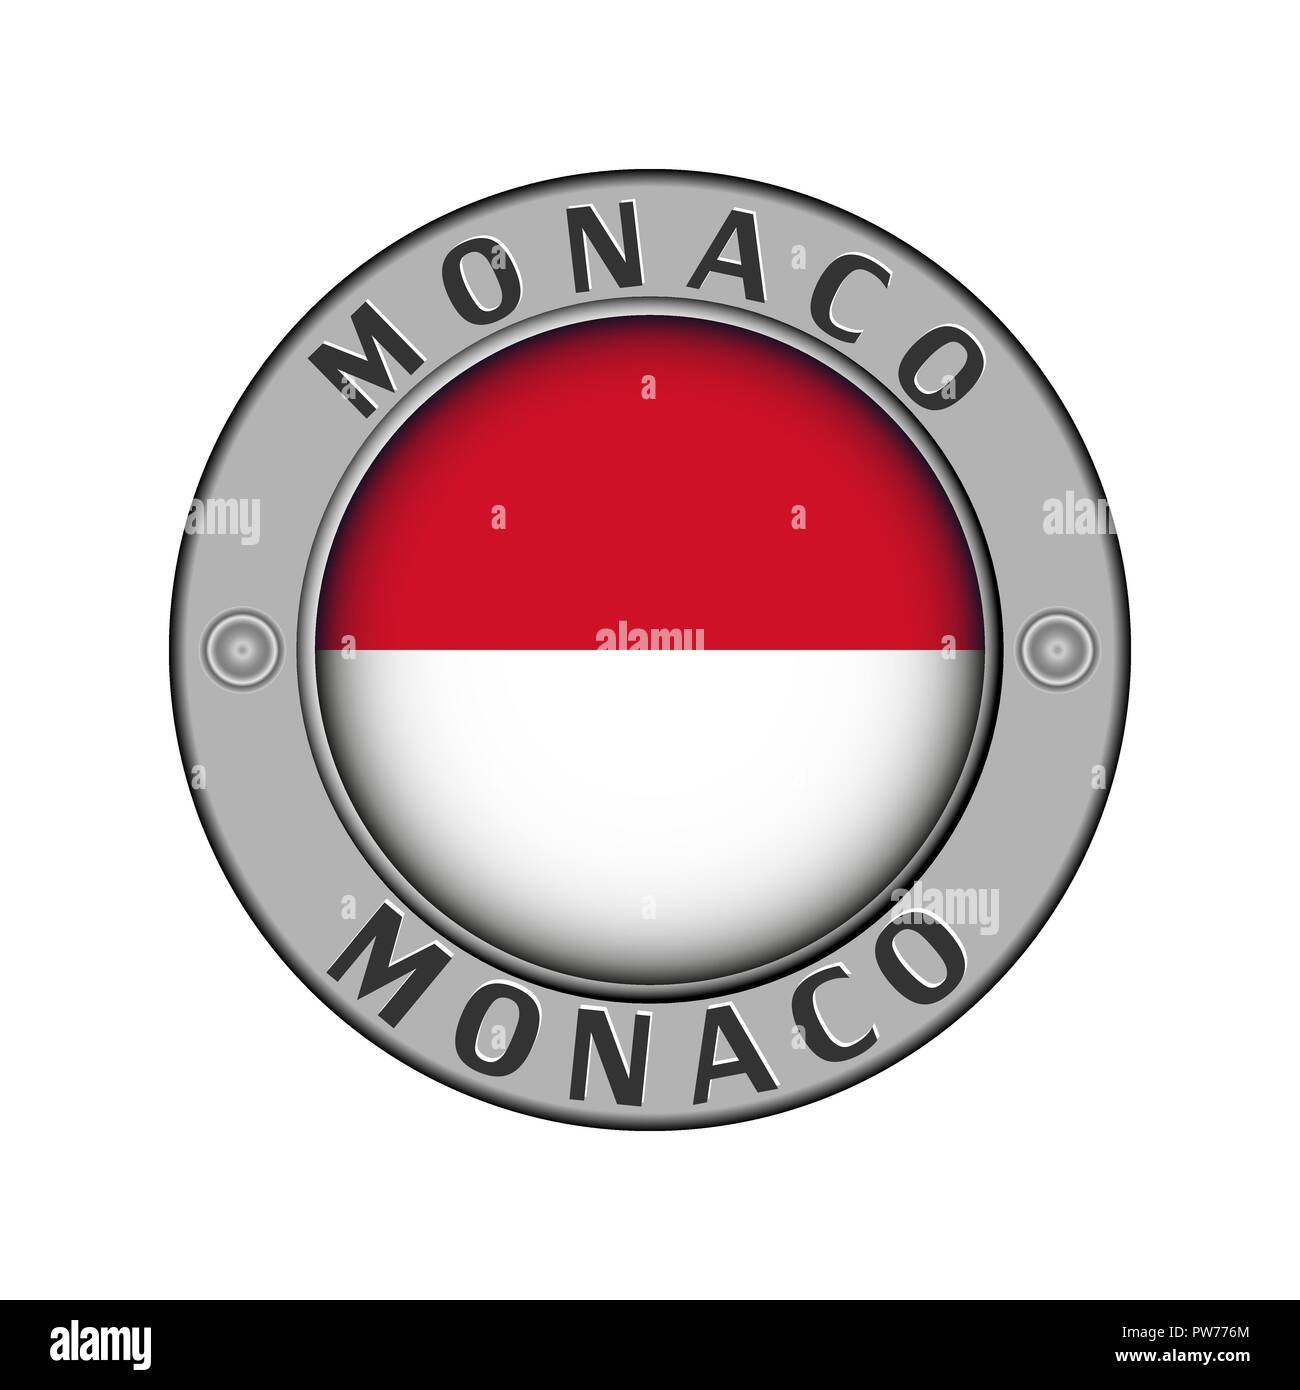 Rotondo di metallo medaglione con il nome del paese di Monaco e un indicatore rotondo nel centro Illustrazione Vettoriale